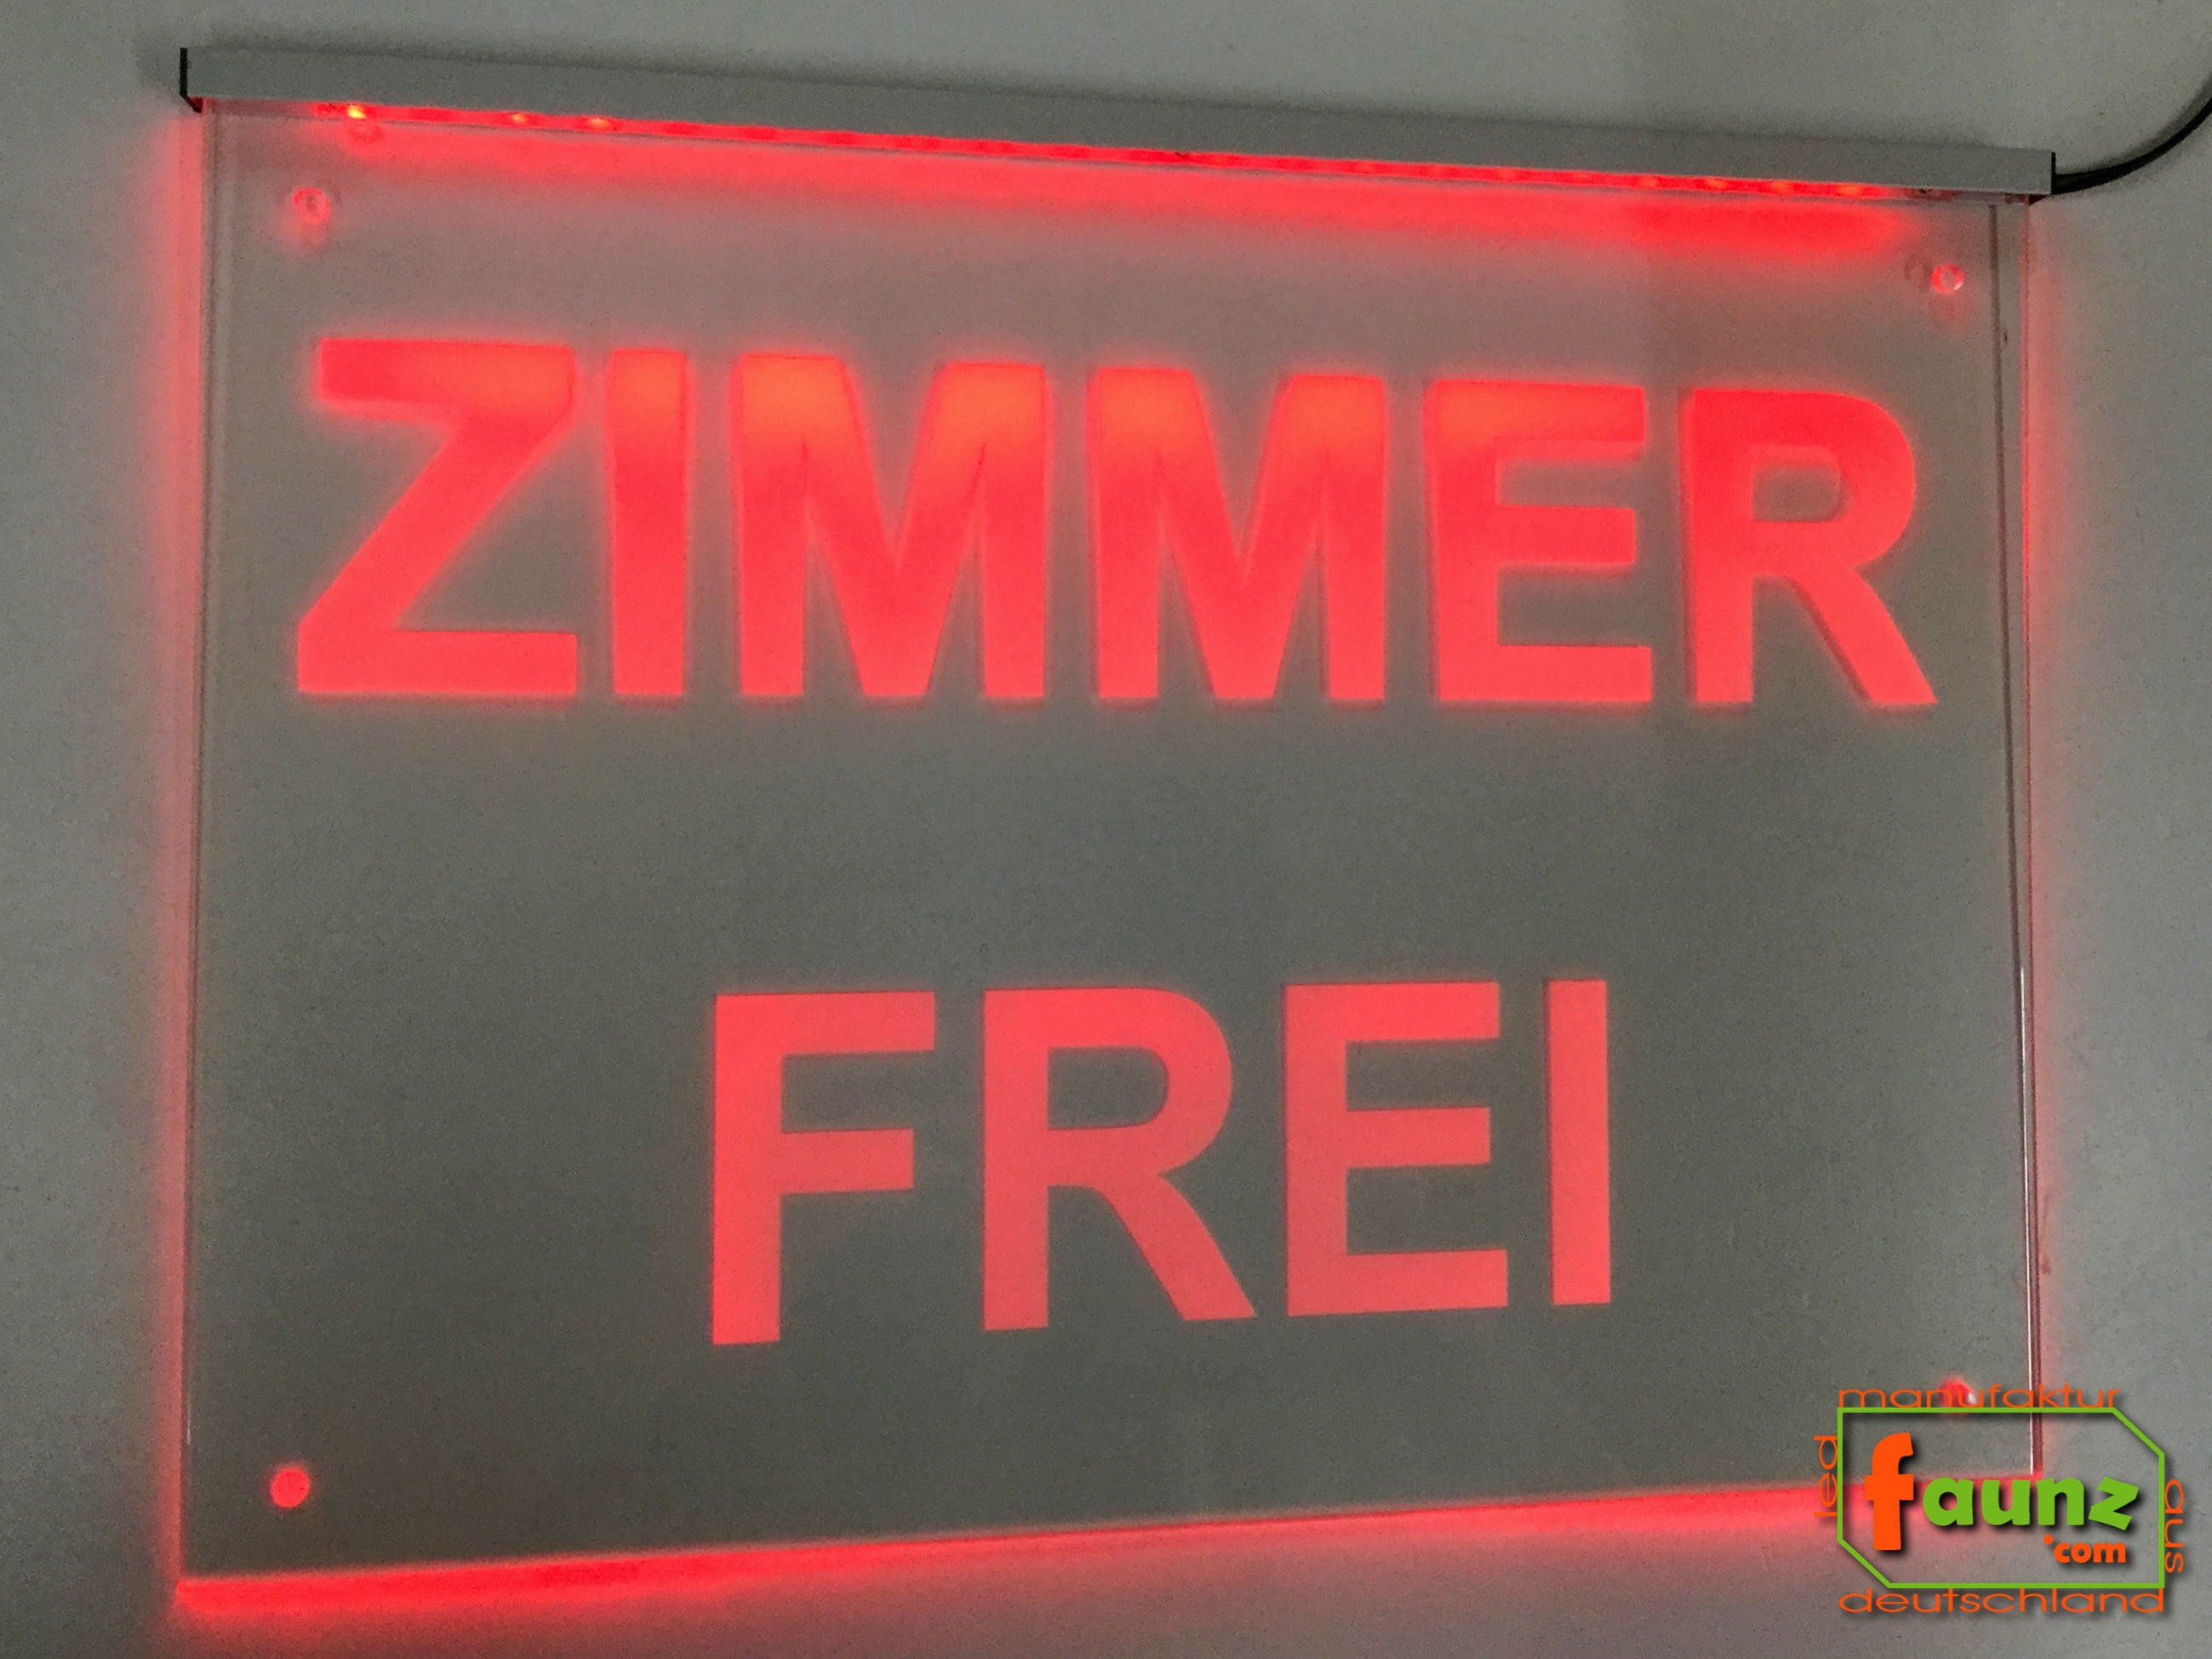 LED Werbeschild Hinweisschild ZIMMER FREI faunz©com faunz Leuchtschild